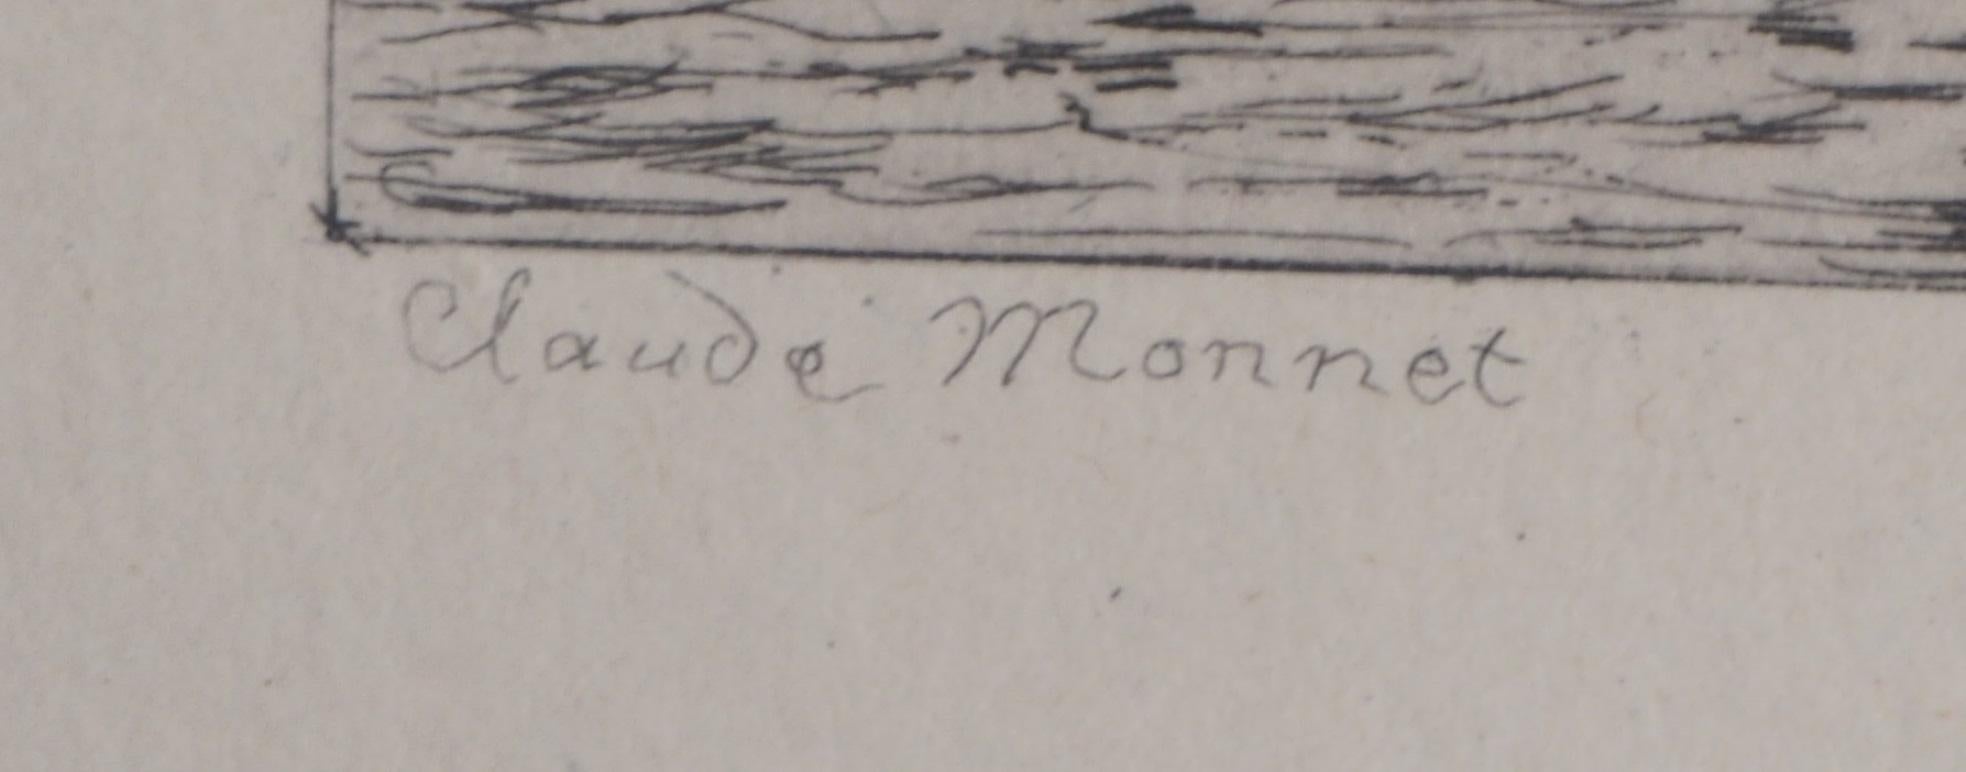 Claude MONET (après)
Moulins à vent en Hollande, 1873

Gravure originale
Gravure de Gaucherel sous la direction de Monet
Signature imprimée dans la plaque (avec la signature Monnet mal orthographiée)
Sur papier vergé 20,5 x 30 cm (c. 8 x 12